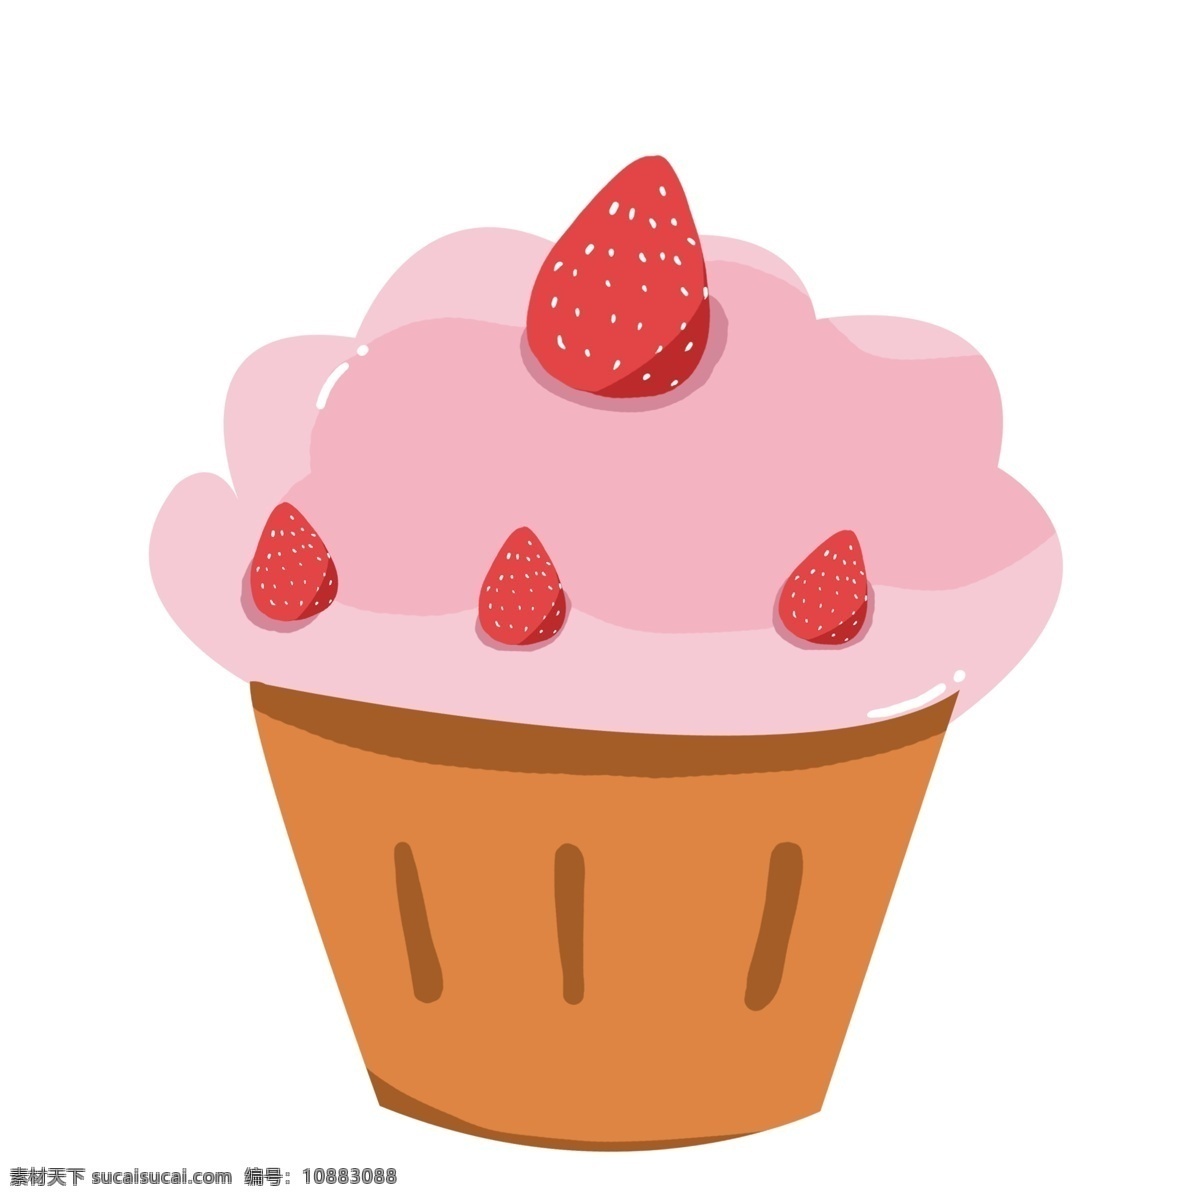 矢量 蛋糕 食物 手绘 生日 节日 草莓蛋糕 矢量食物 矢量蛋糕 简约蛋糕 免扣蛋糕 卡通食物 甜点